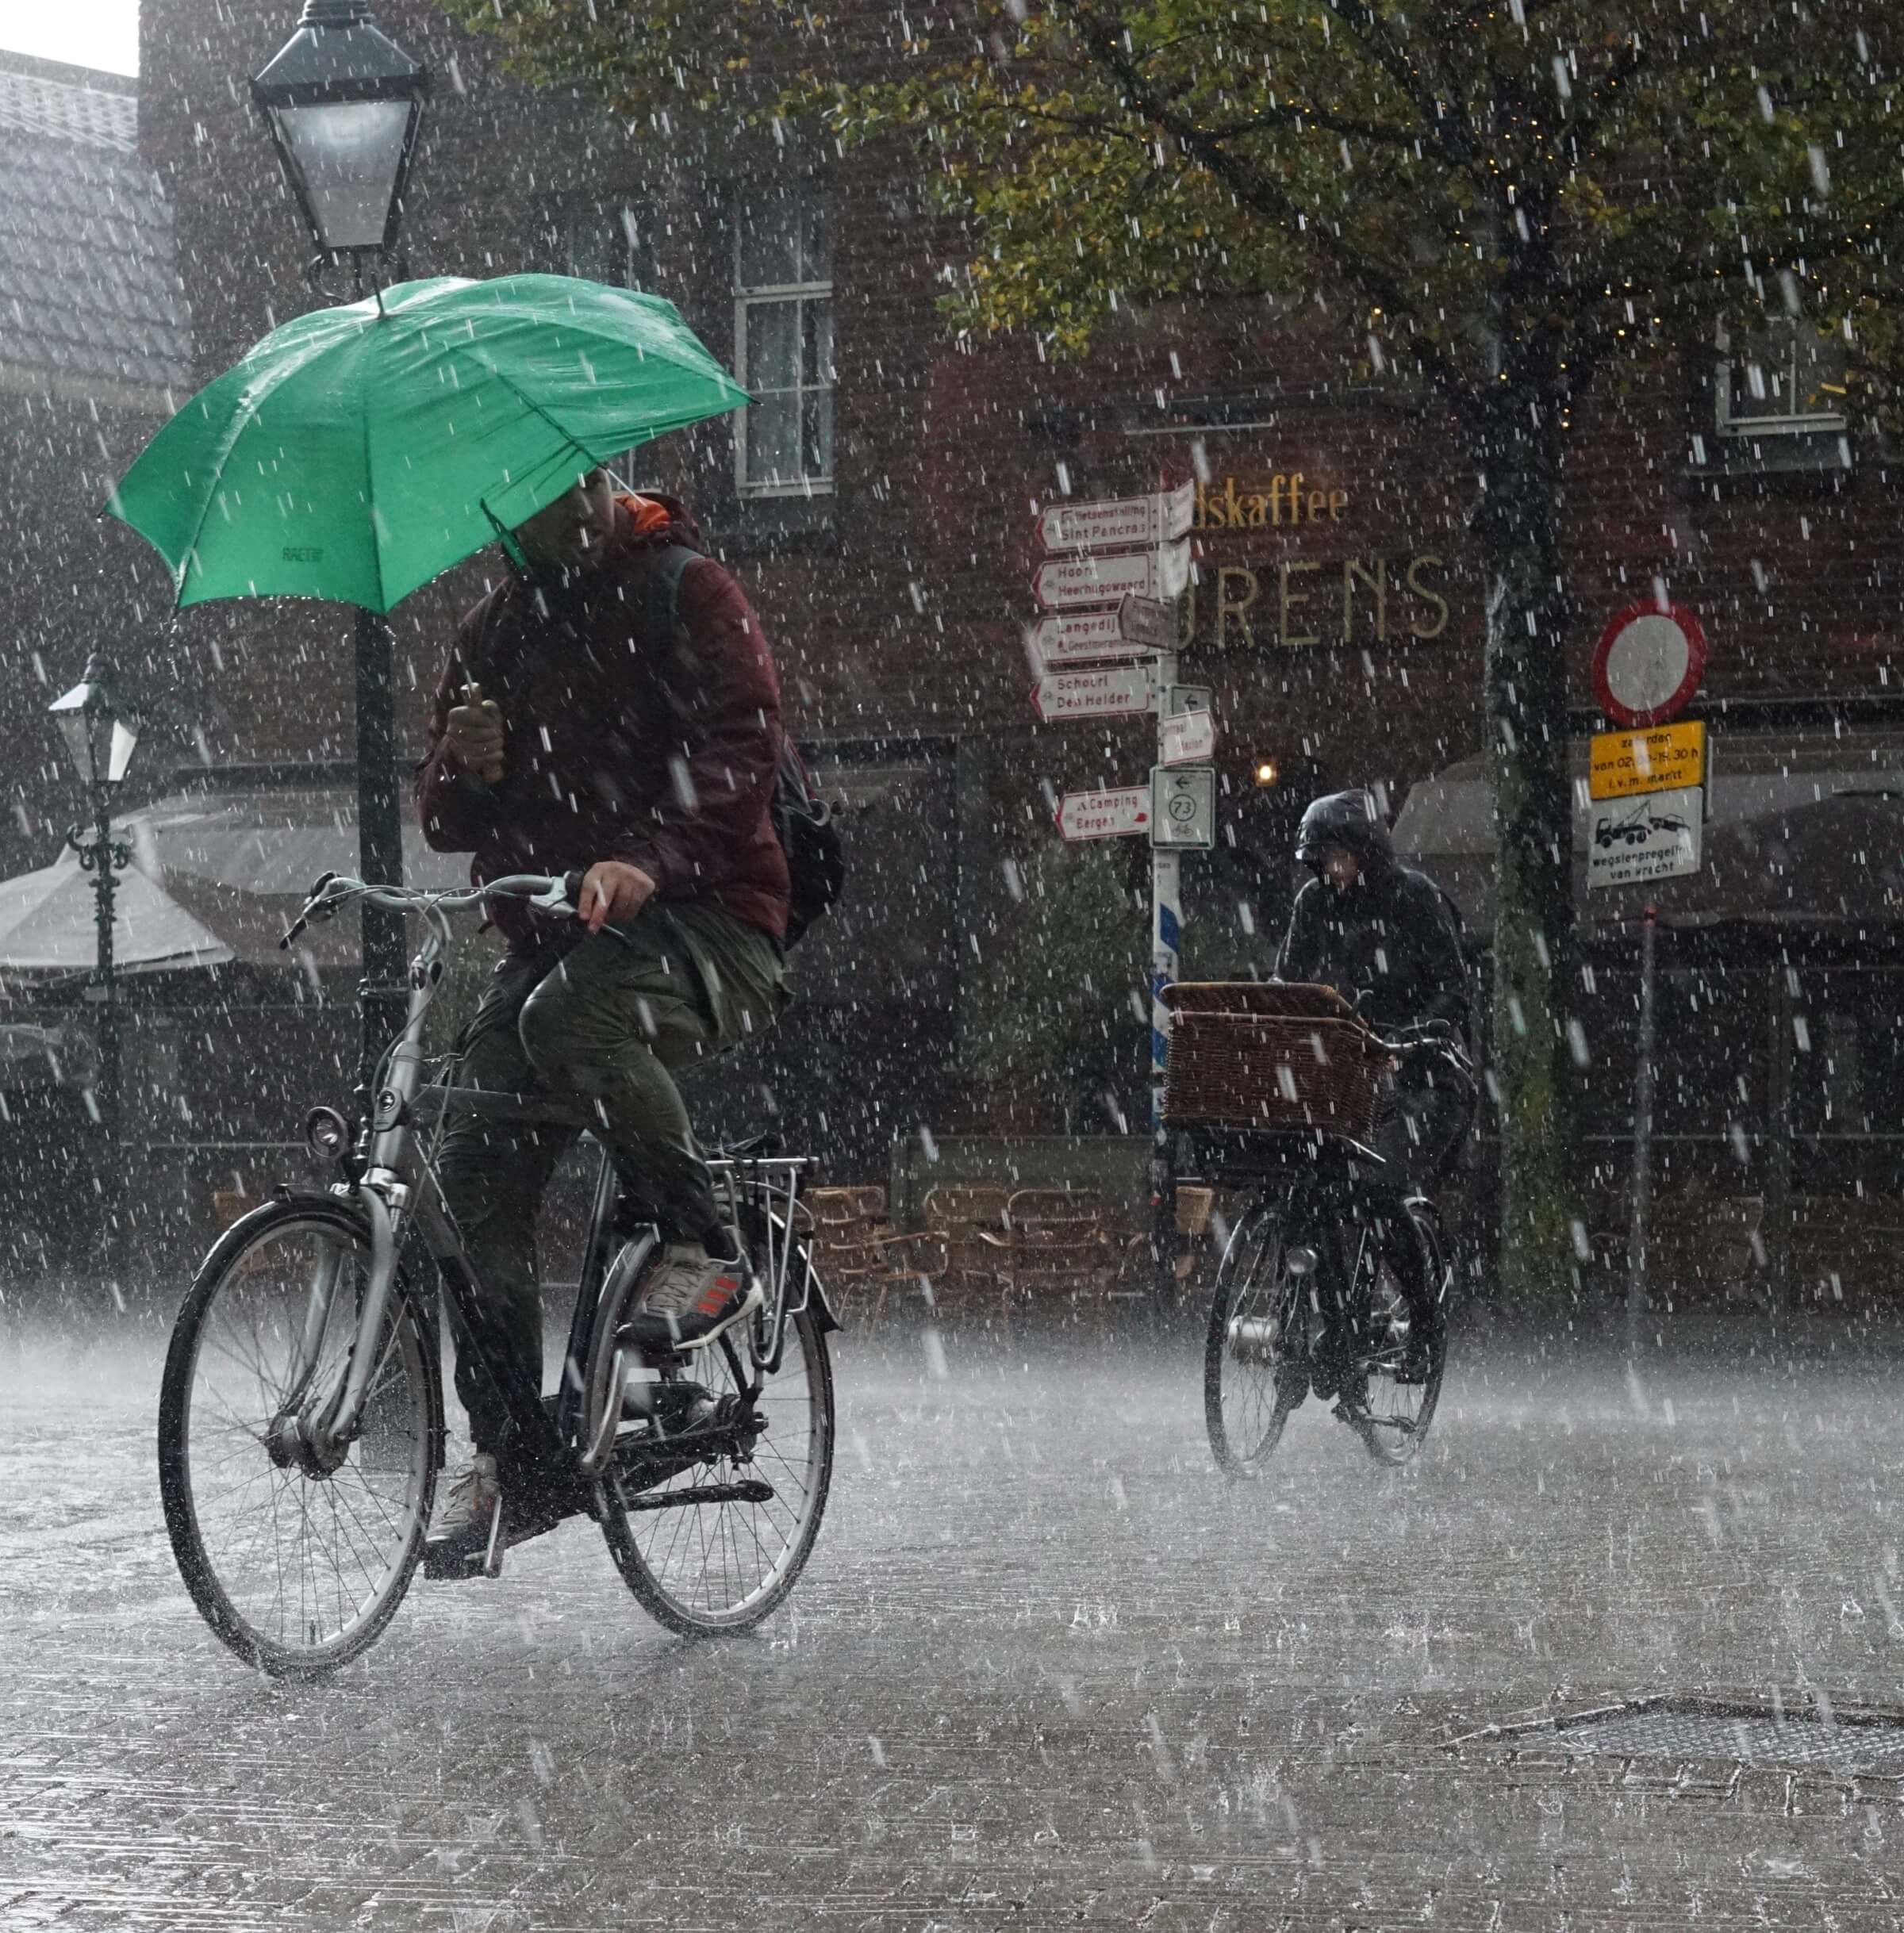 peron on bicycle in rain